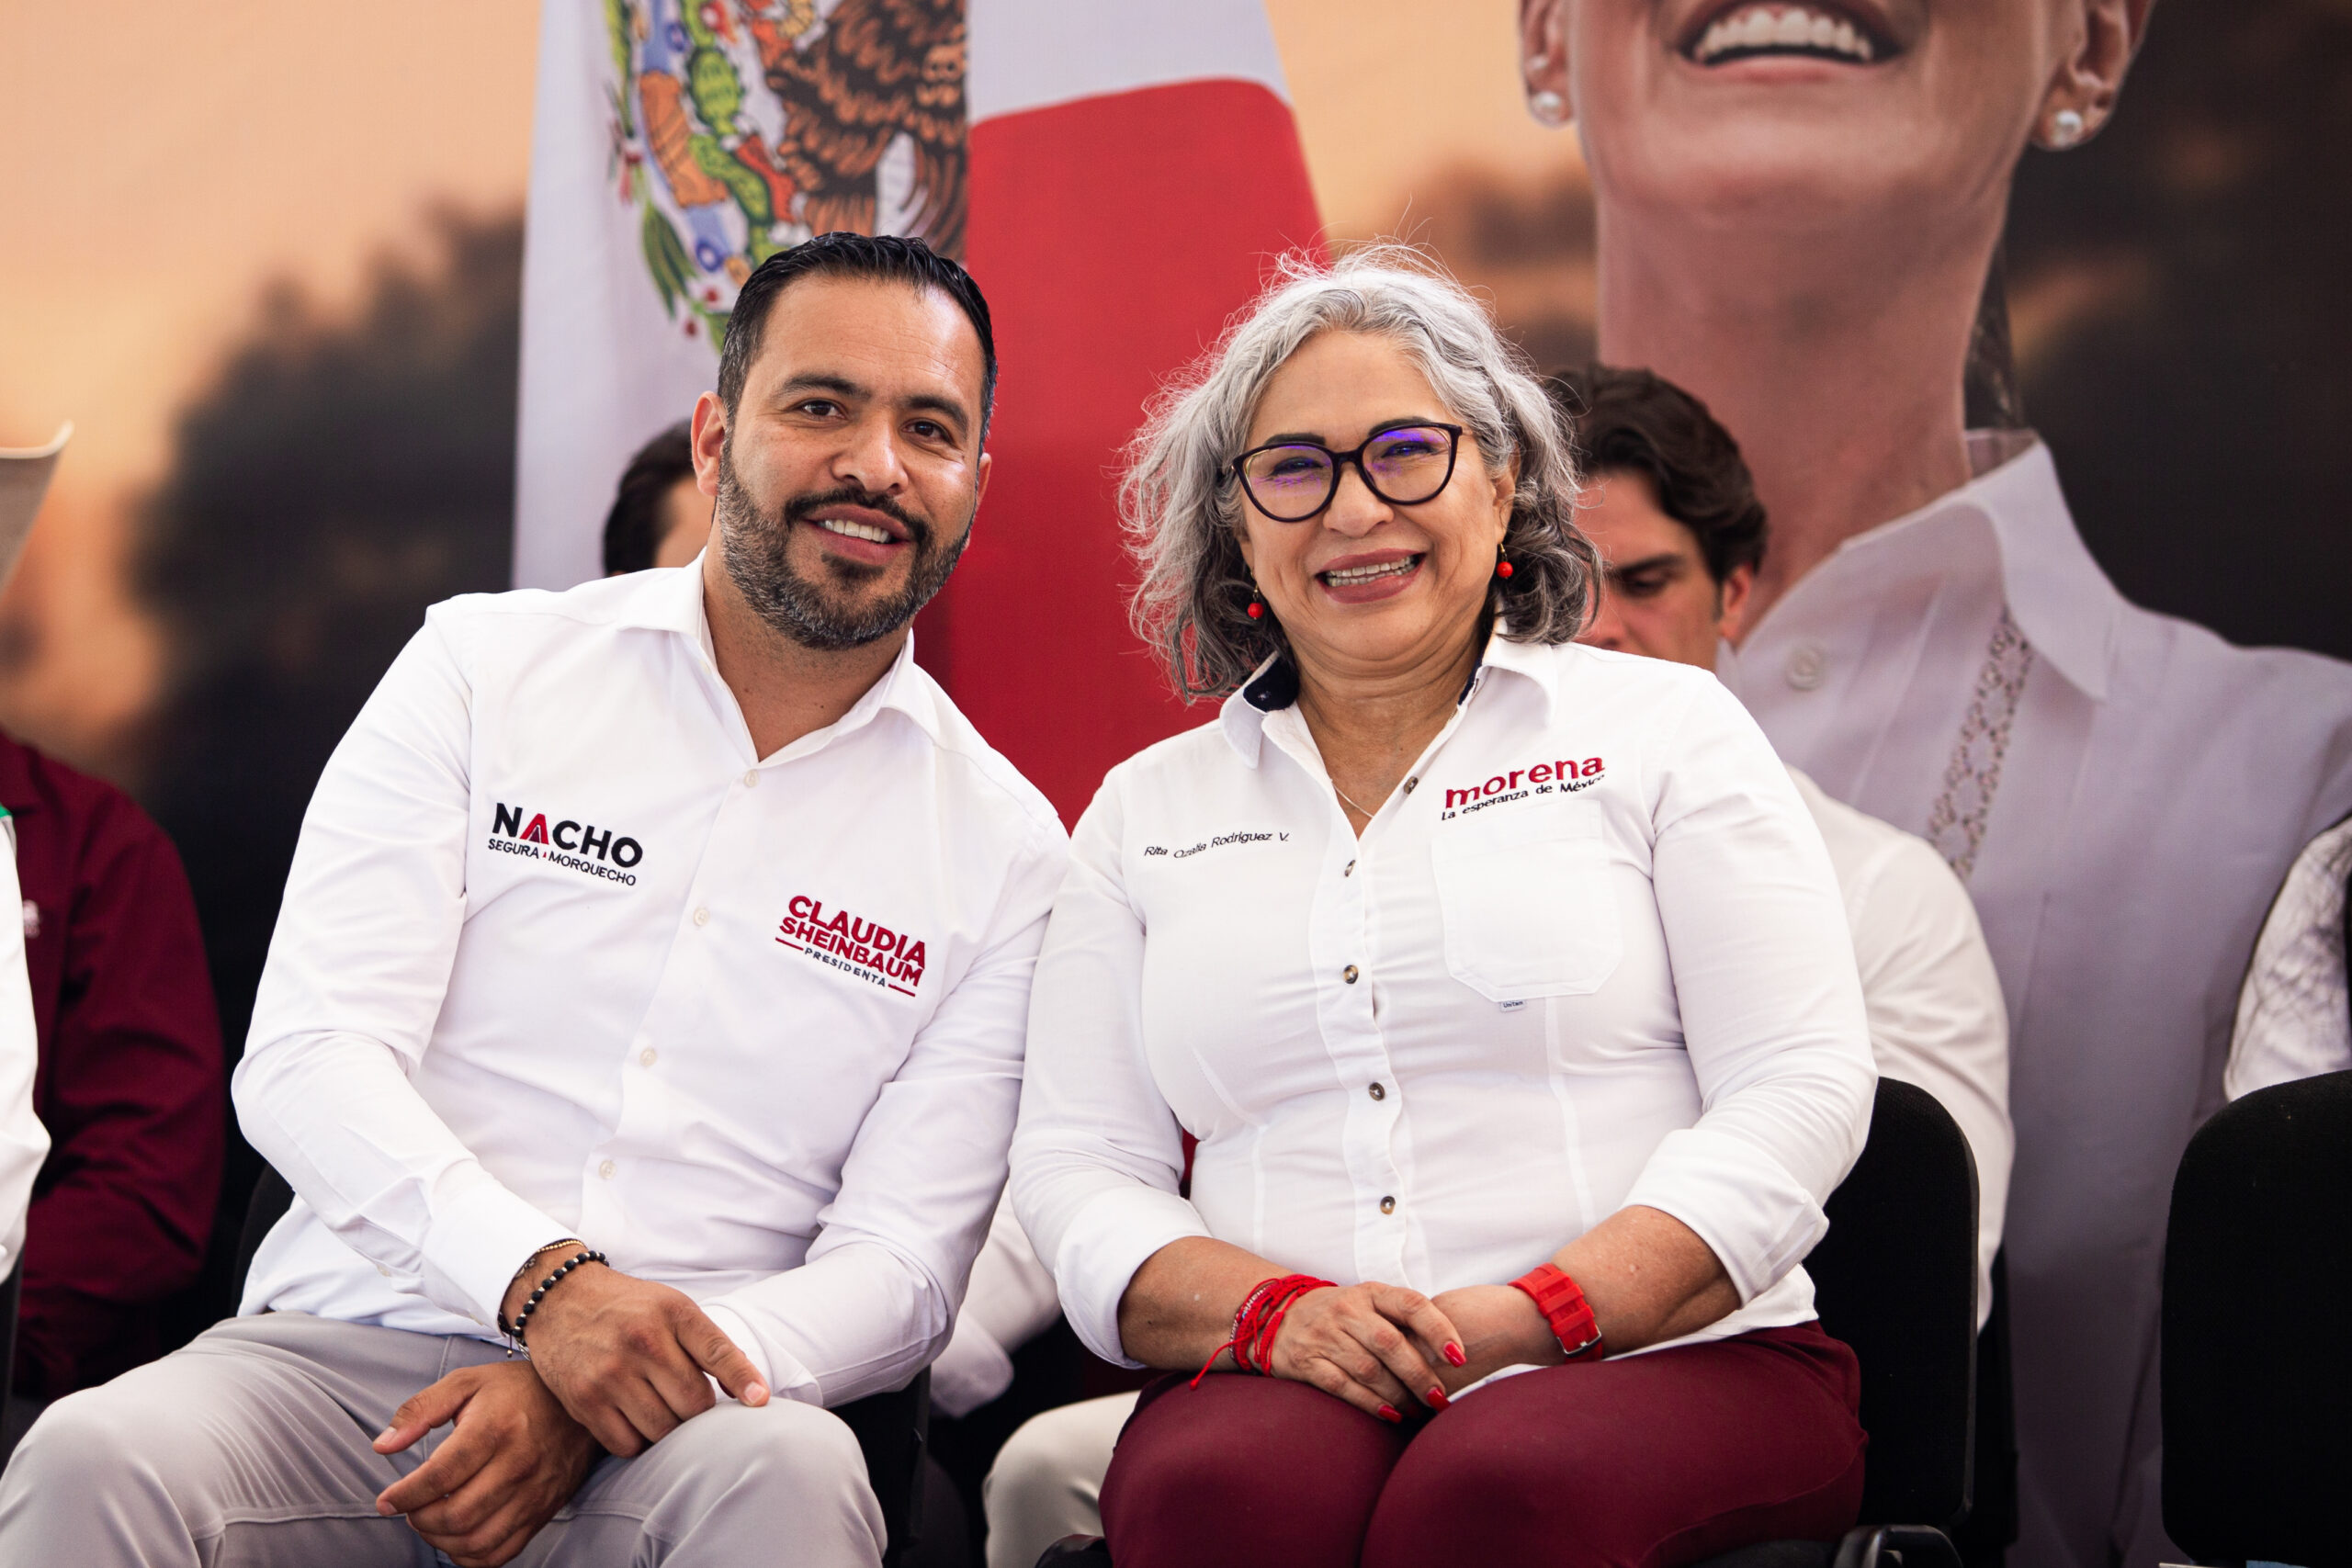 Rita Rodríguez e Ignacio Segura lideran encuesta de Rubrum para el Senado de la República